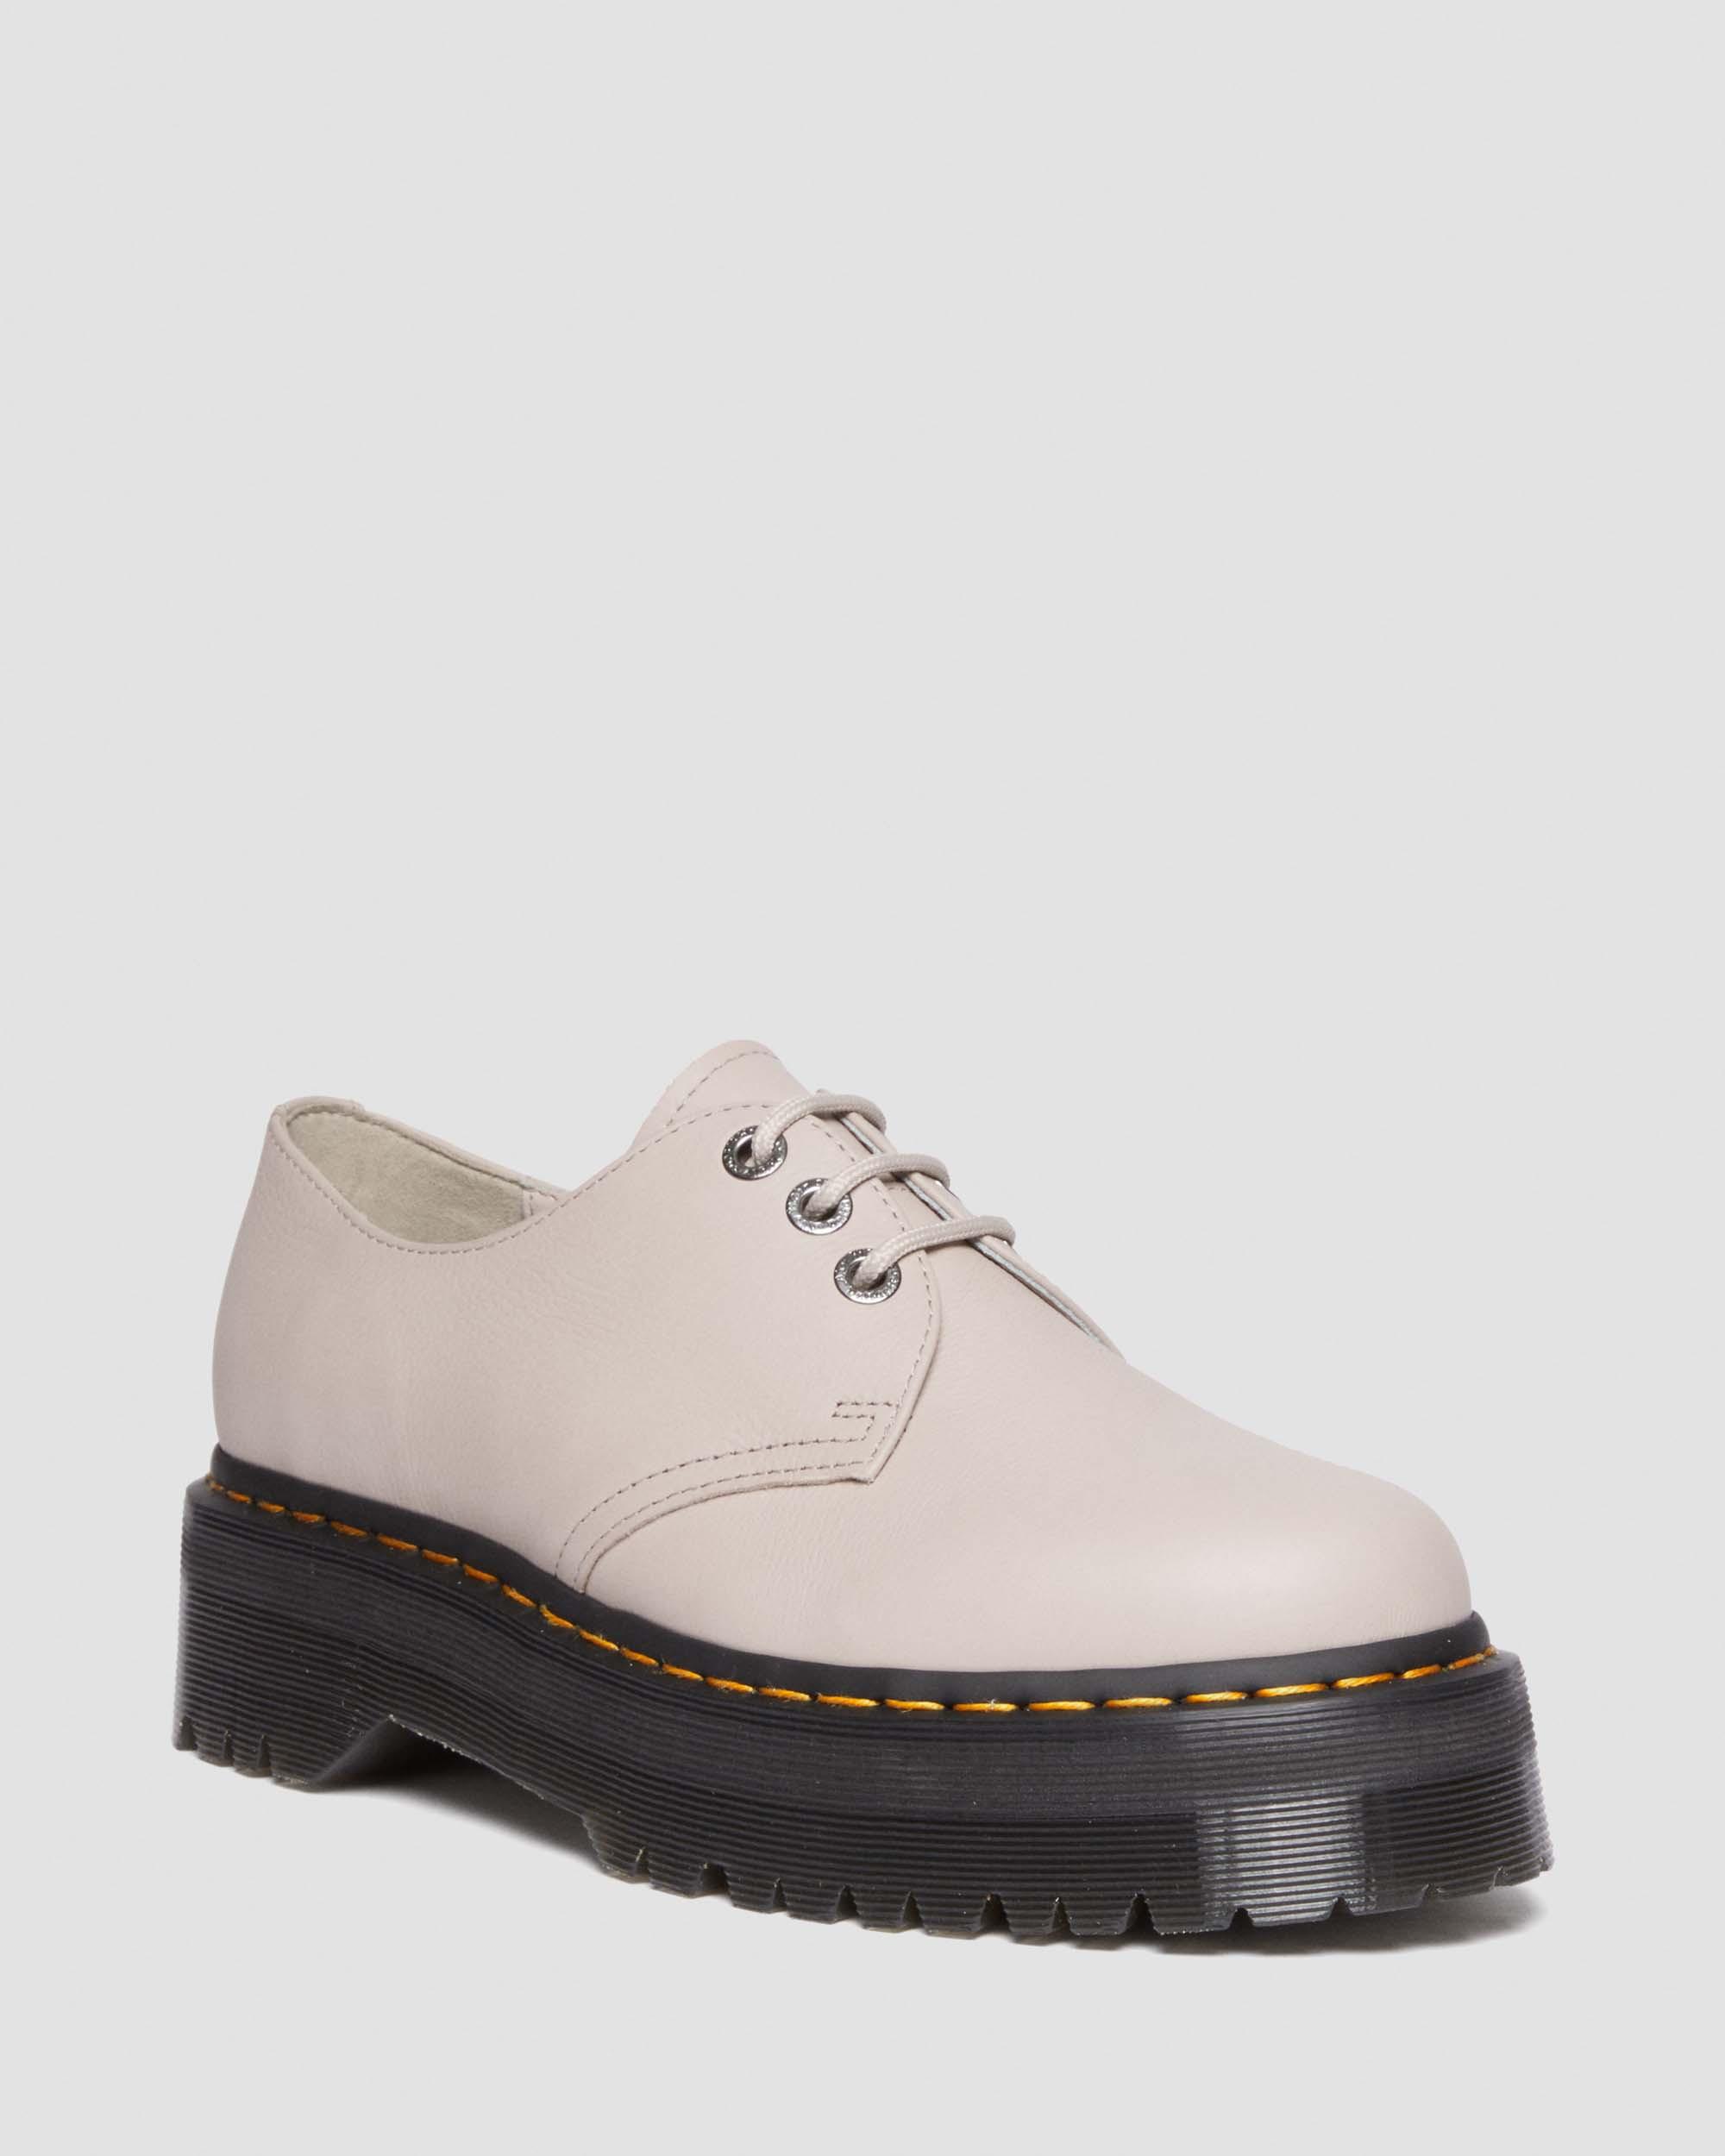 Pisa Dr. Platform | Taupe Leather Shoes 1461 Martens in Vintage II